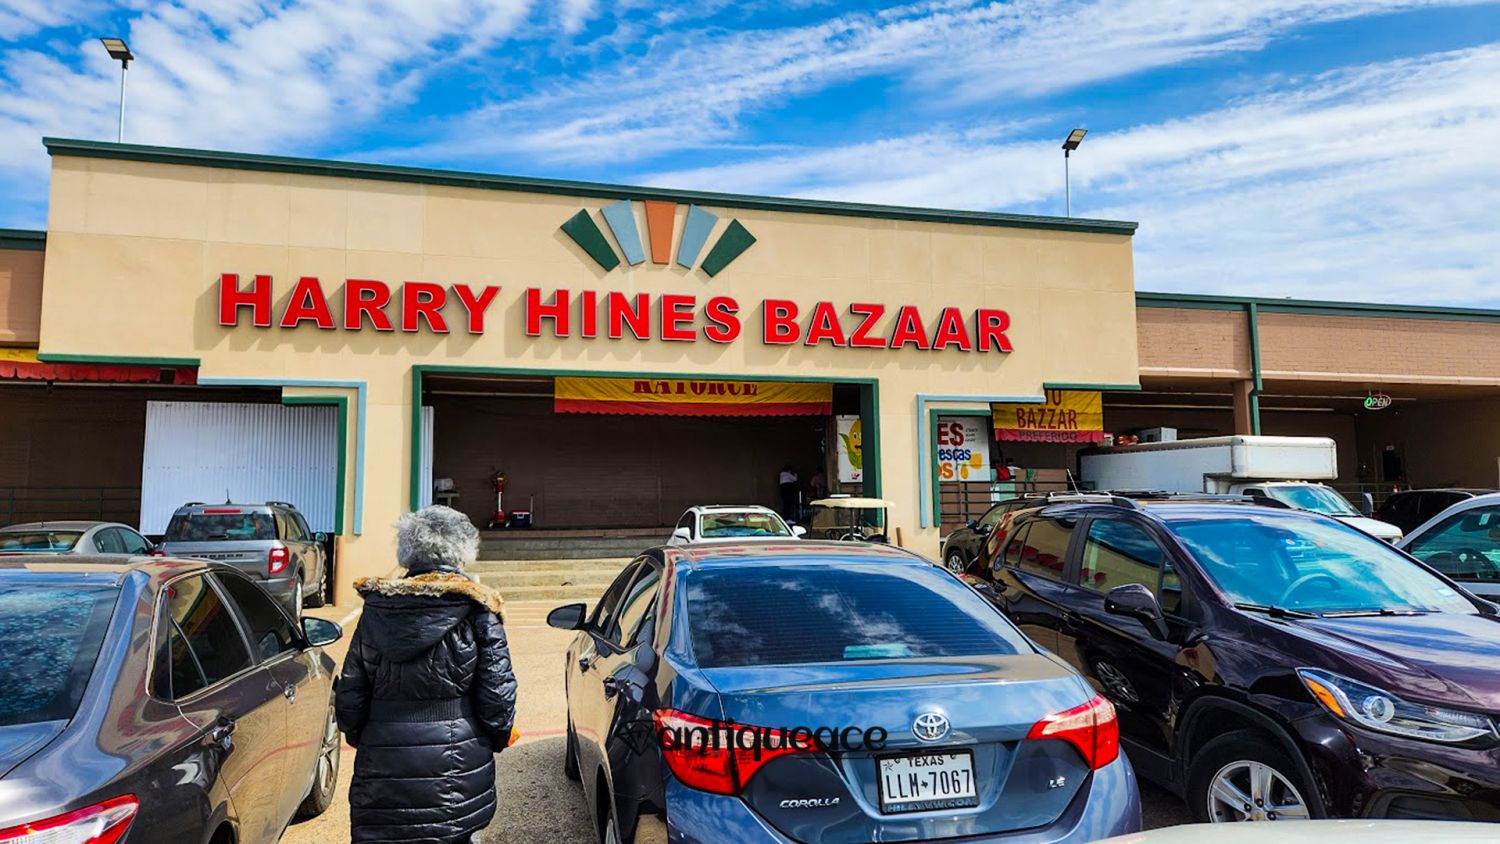 Harry Hines Bazaar